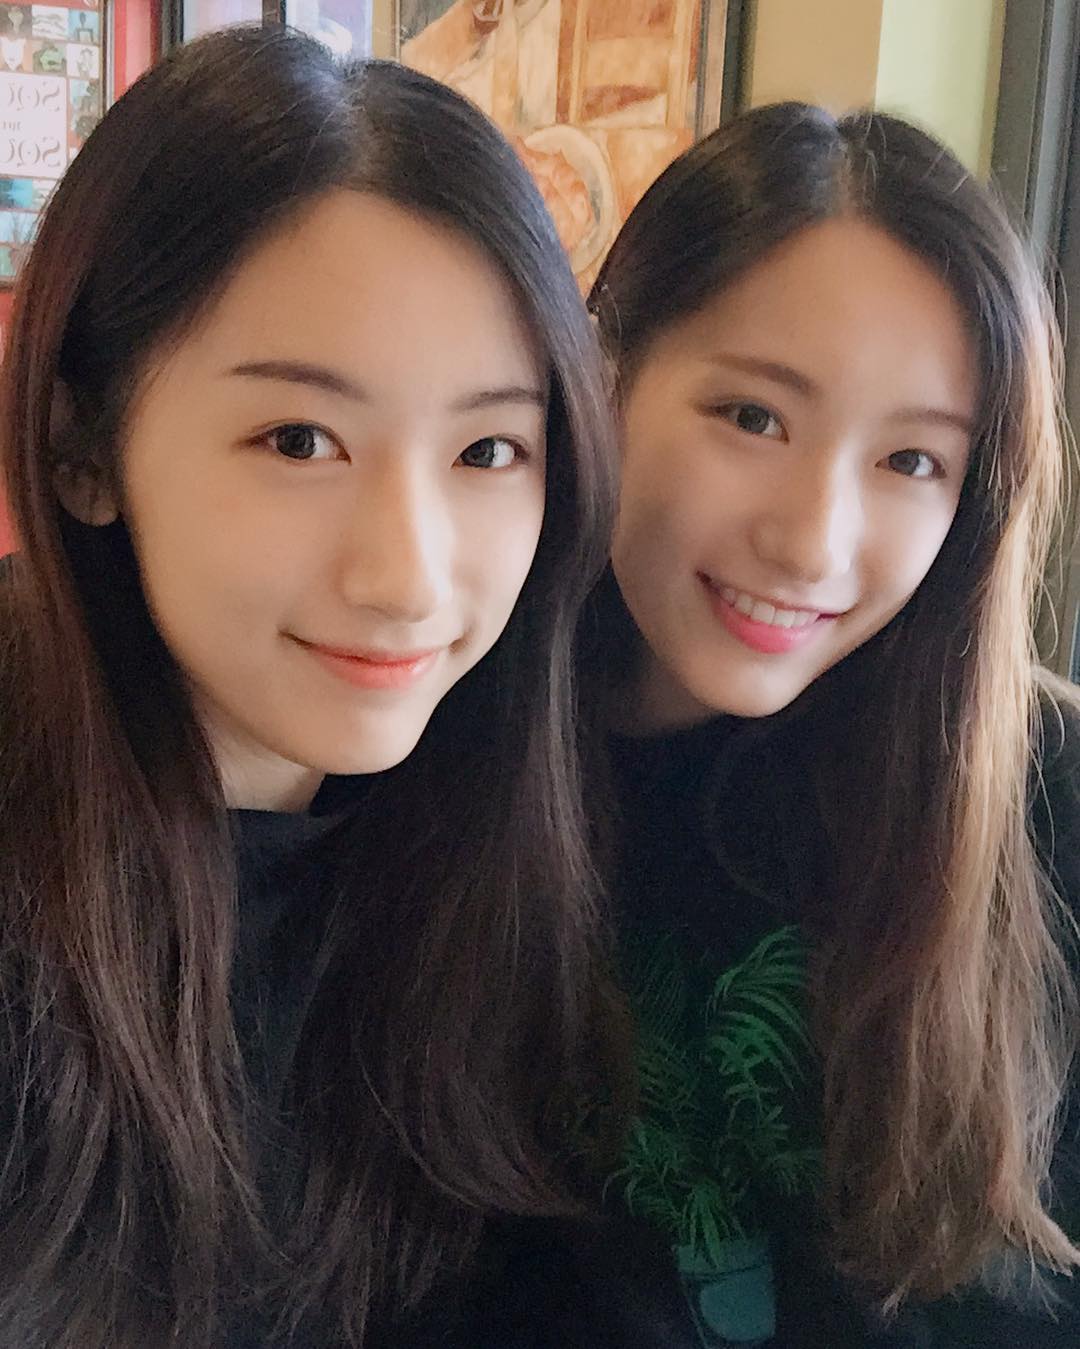 Chinese twins